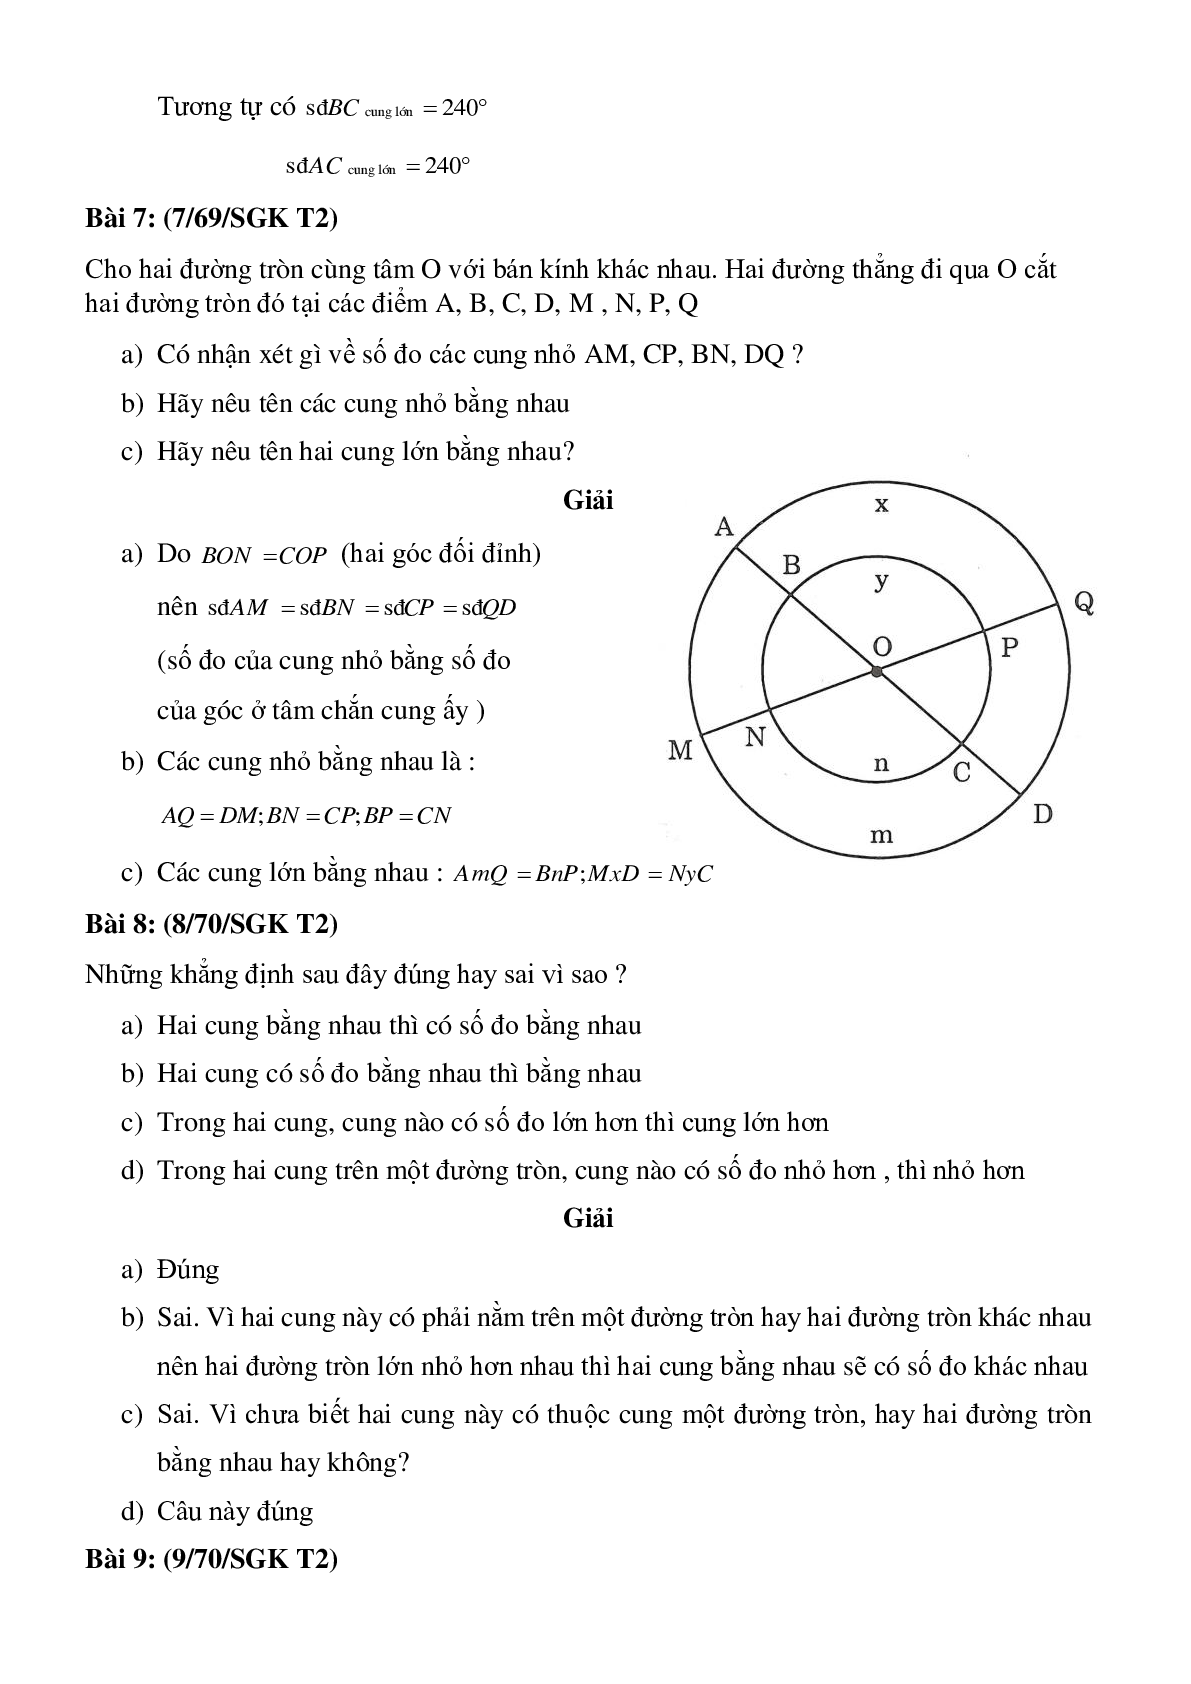 Các dạng bài thường gặp về Góc ở tâm - Số đo cung chi tiết, có đáp án (trang 6)